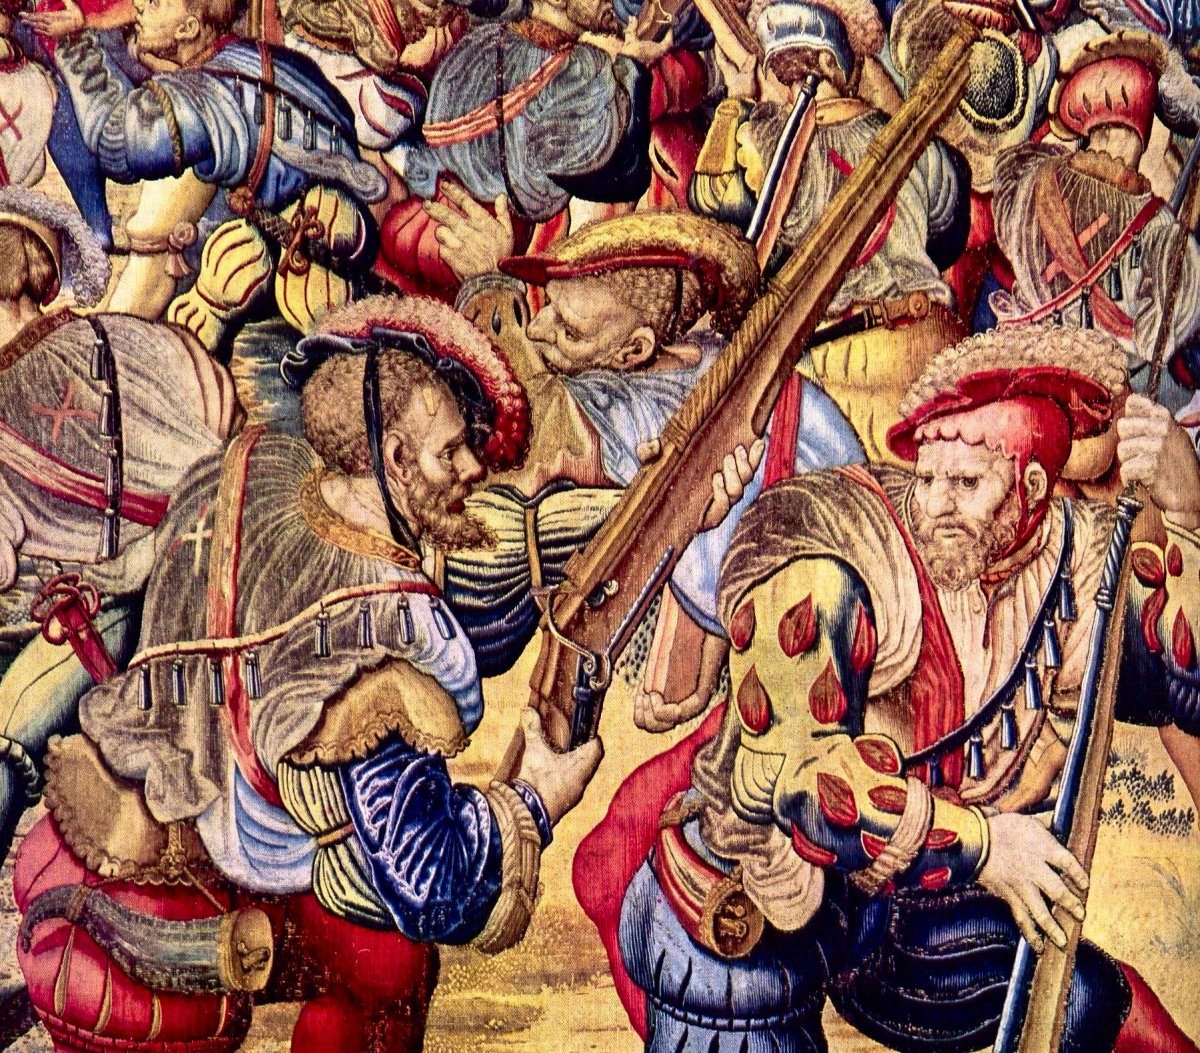 #TalDíaComoHoy de 1524 se produjo la batalla de Sesia. Las virtudes del arcabuz quedaron probadas pues vencieron a la caballería pesada francesa en campo abierto. A corta distancia, los proyectiles atravesaron fácilmente las corazas de los jinetes franceses.